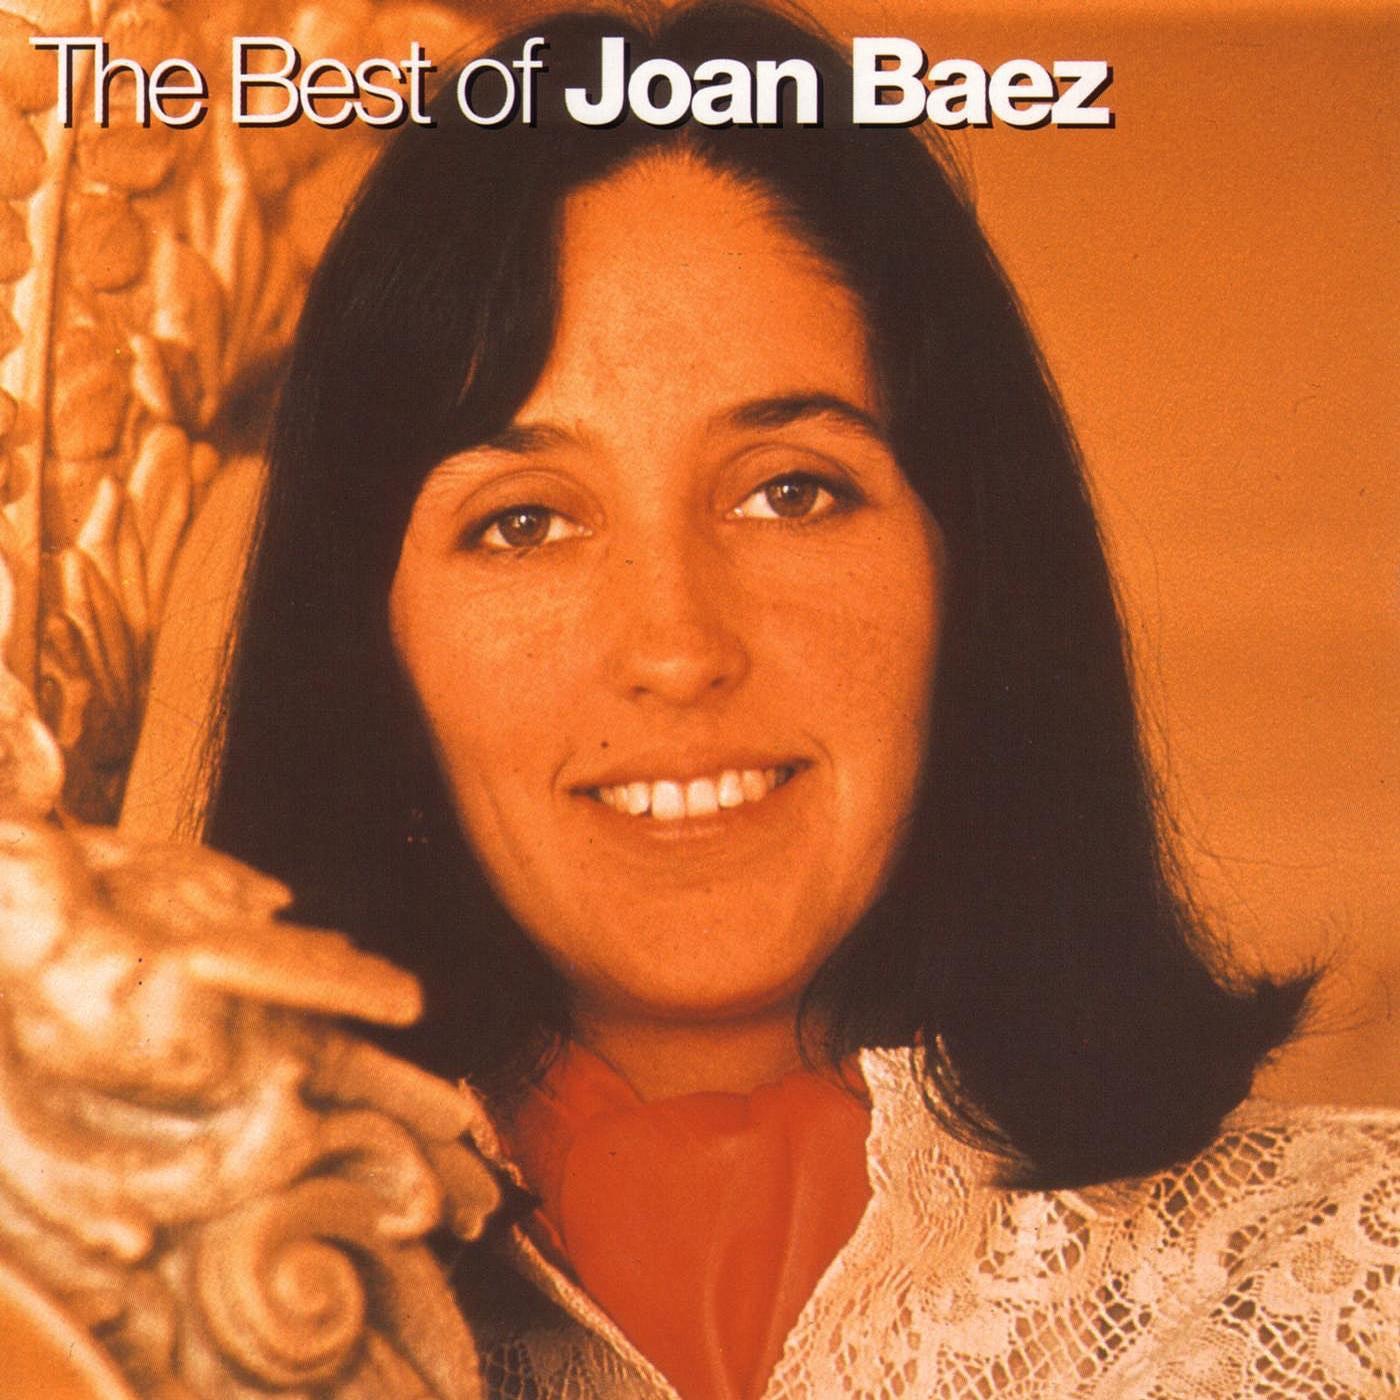 The Best Of Joan Baez by Joan Baez